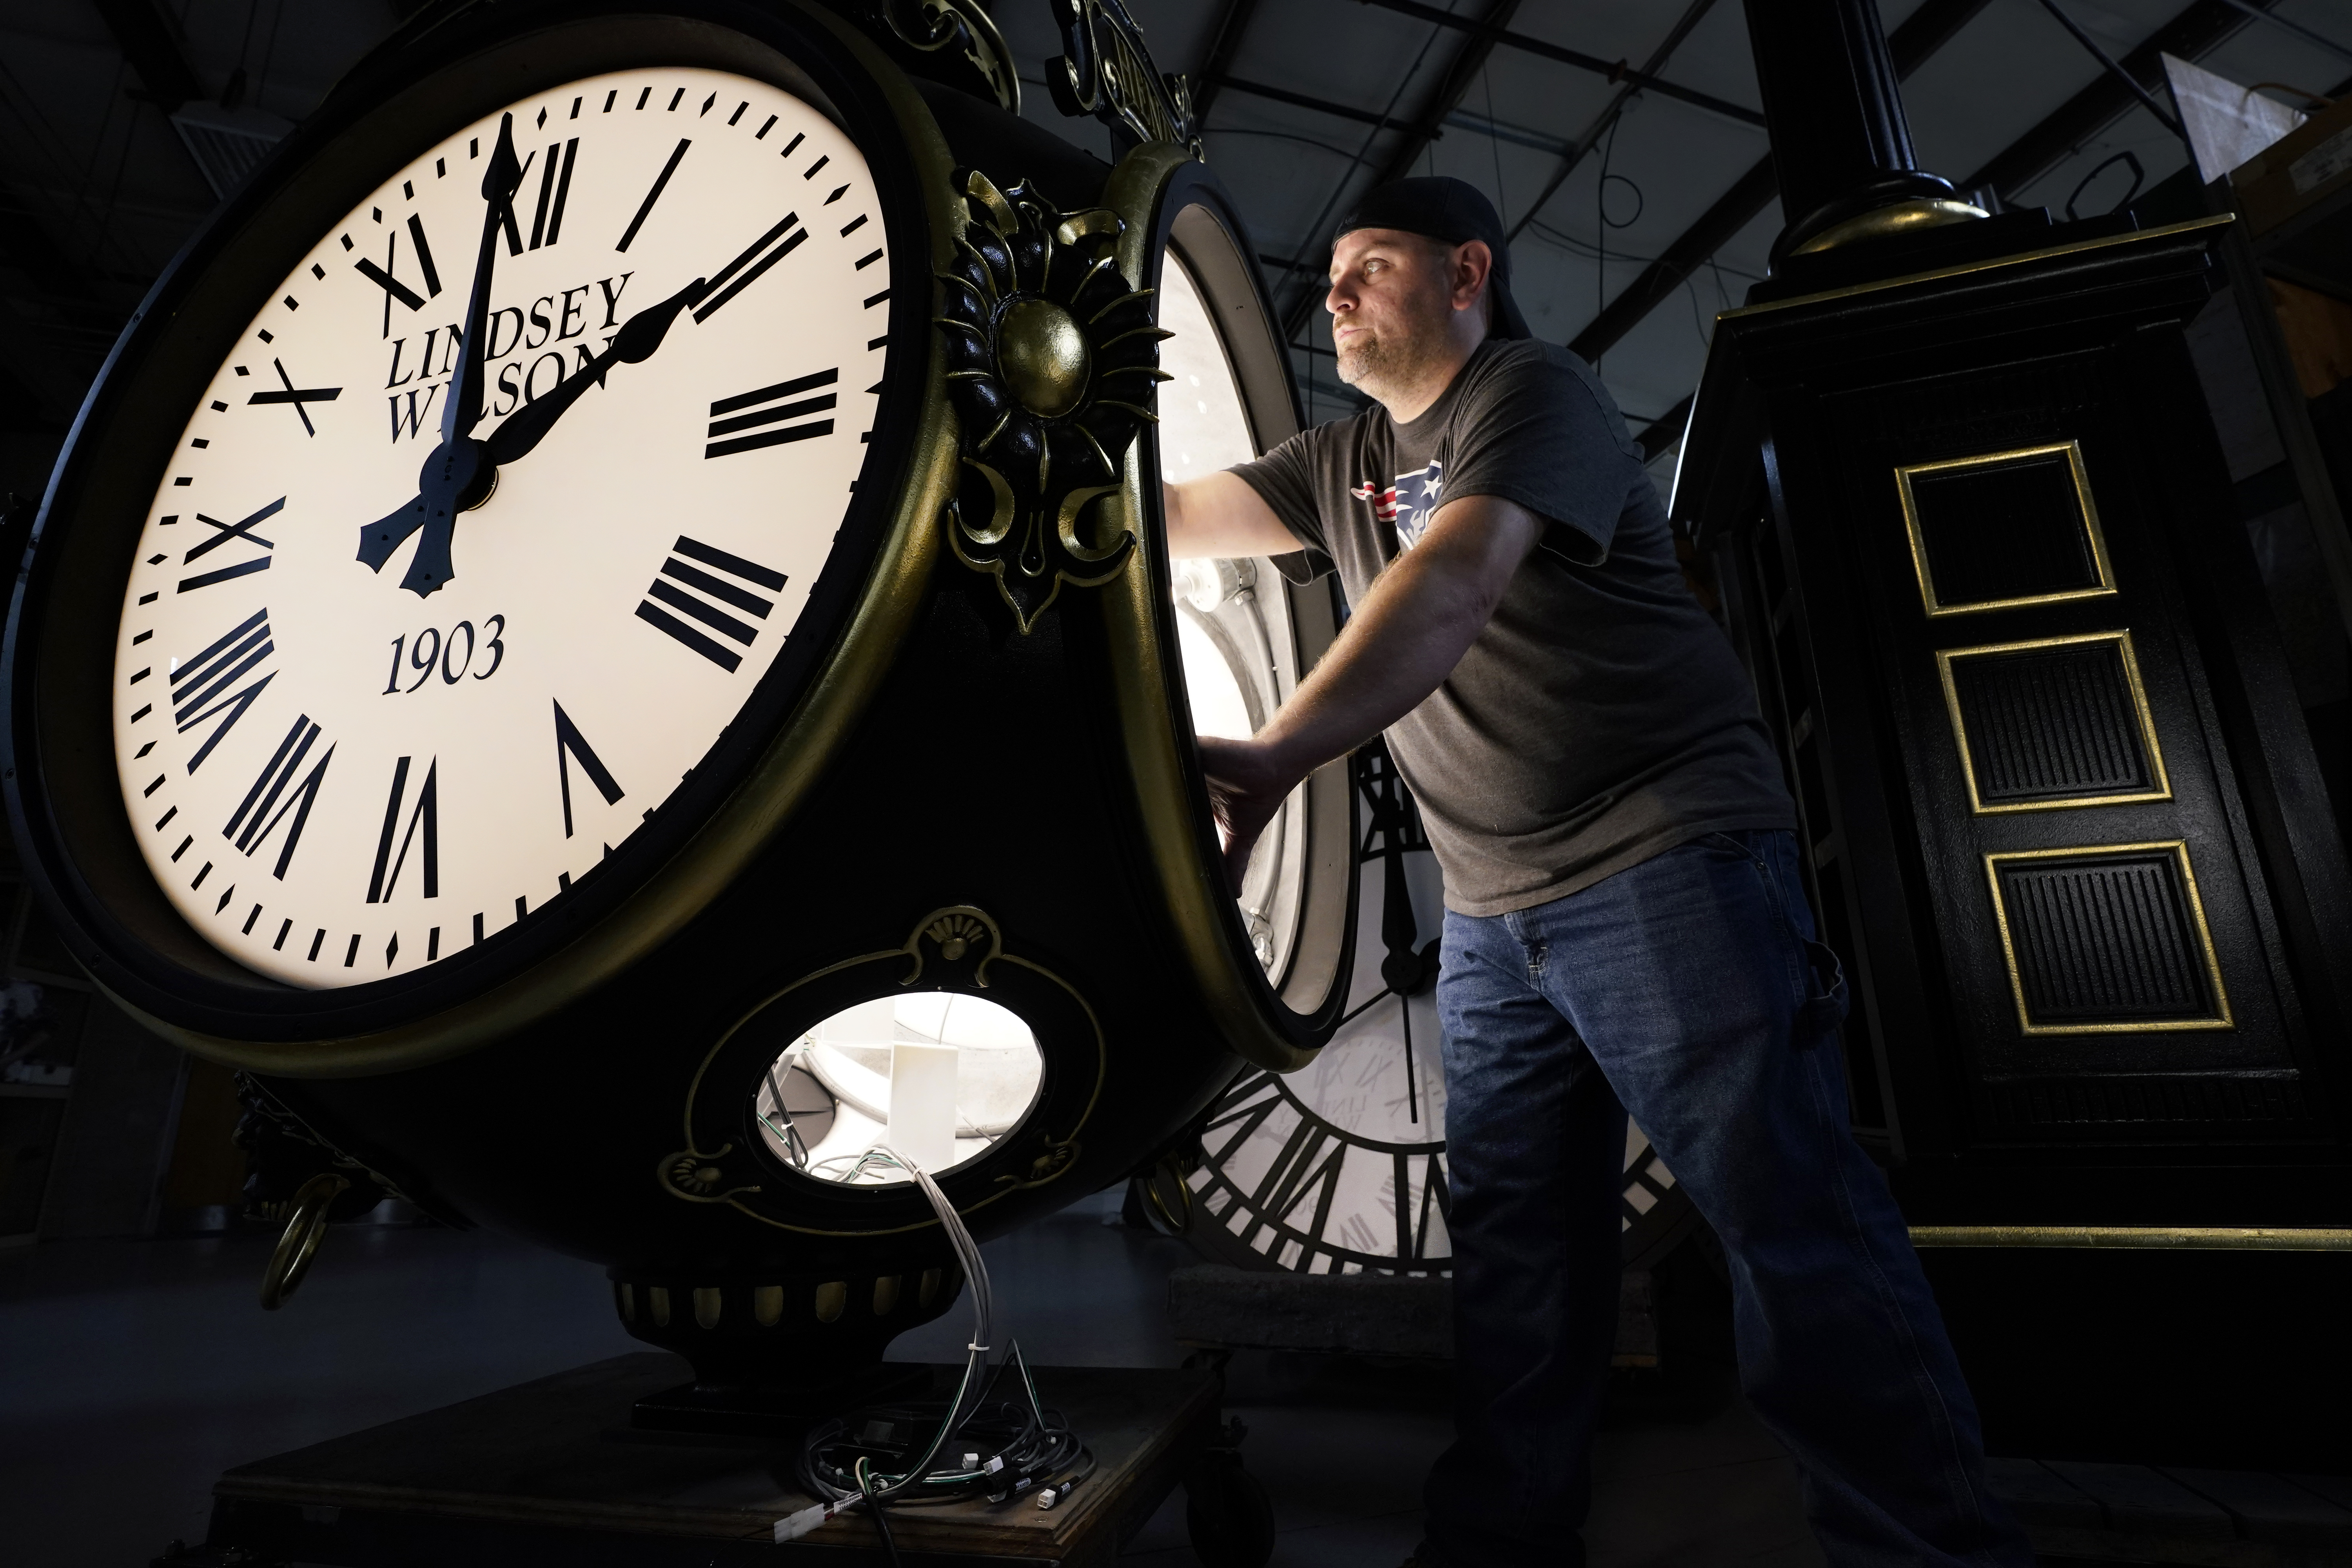 U.S. Senate approves bill to make daylight saving time permanent